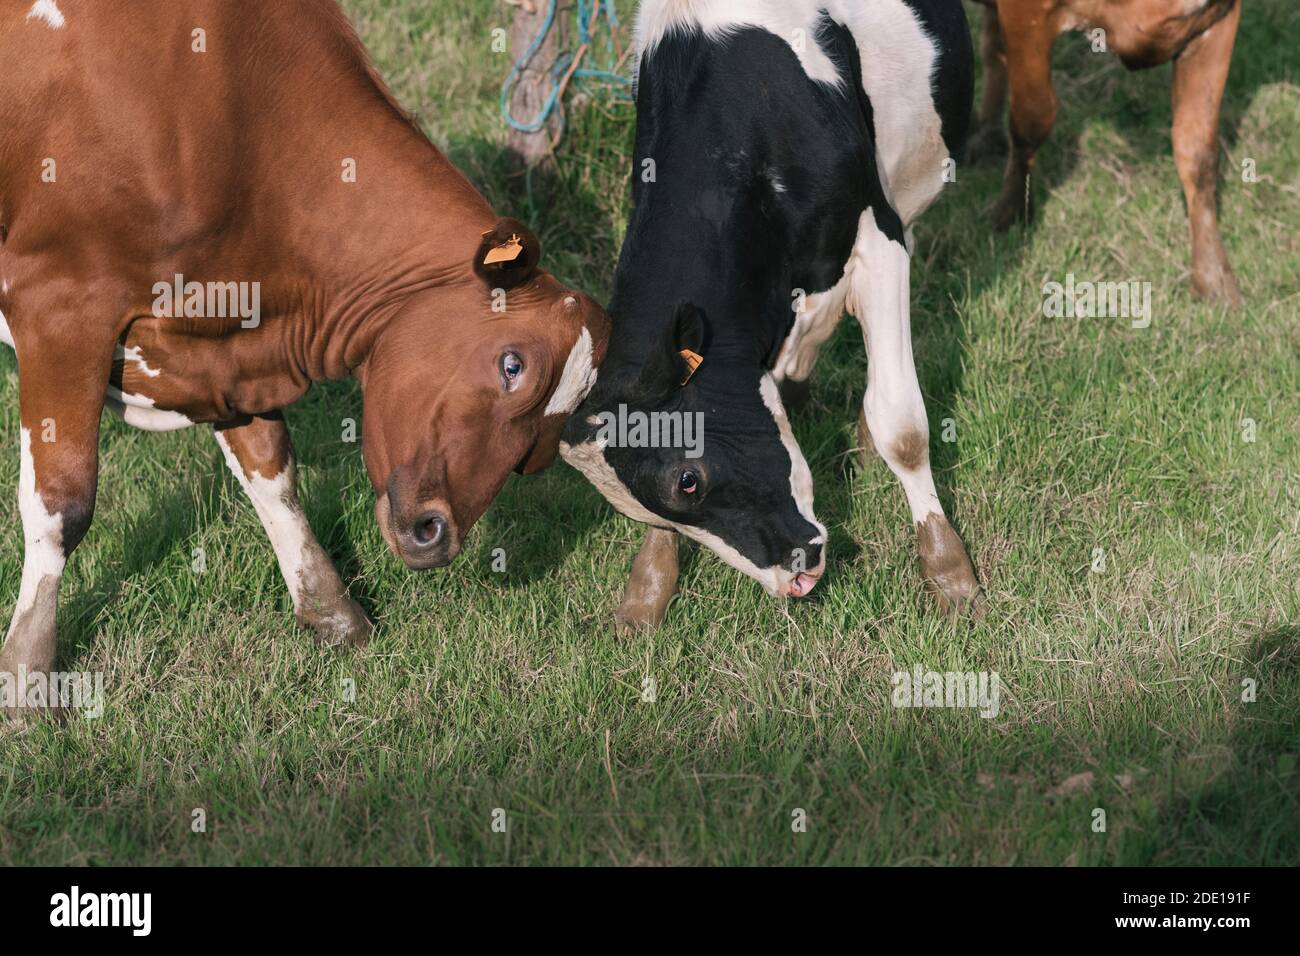 Deux vaches se combattent dans la ferme Banque D'Images